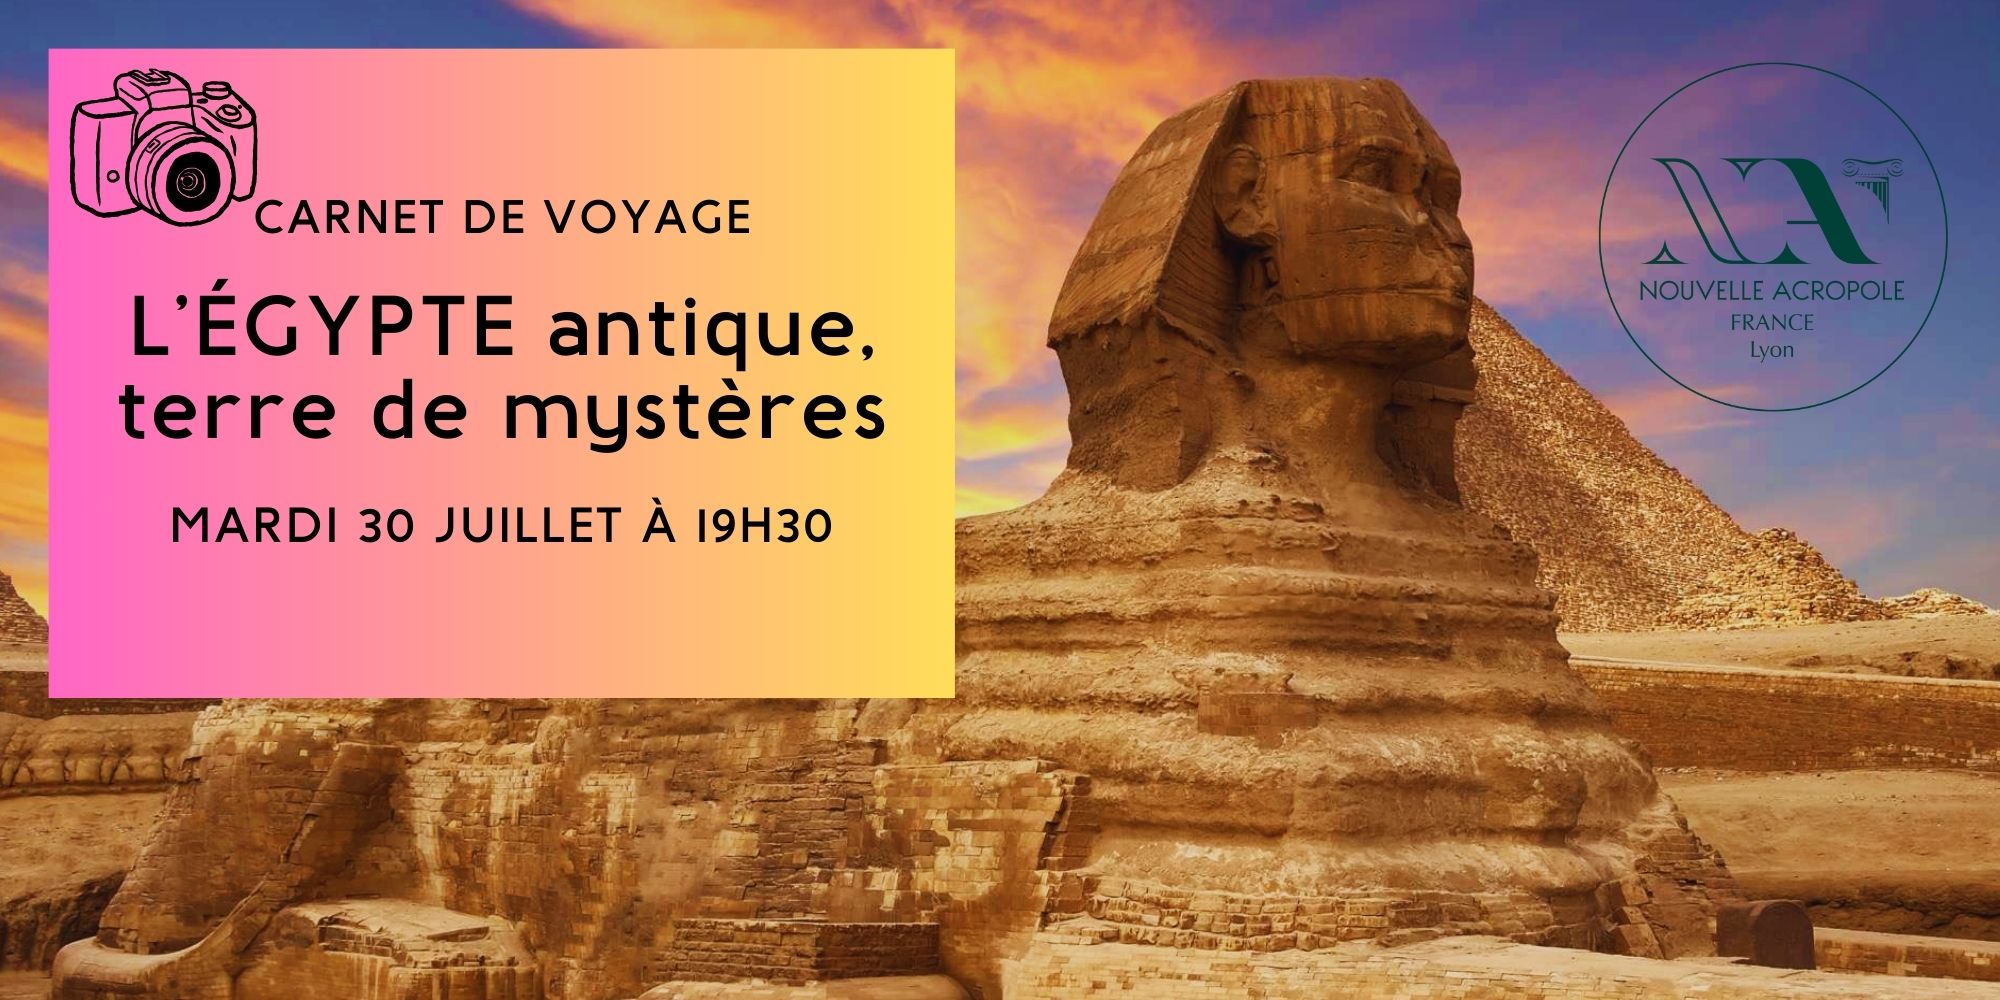 Carnet de voyage : l’Egypte antique, terre de mystères